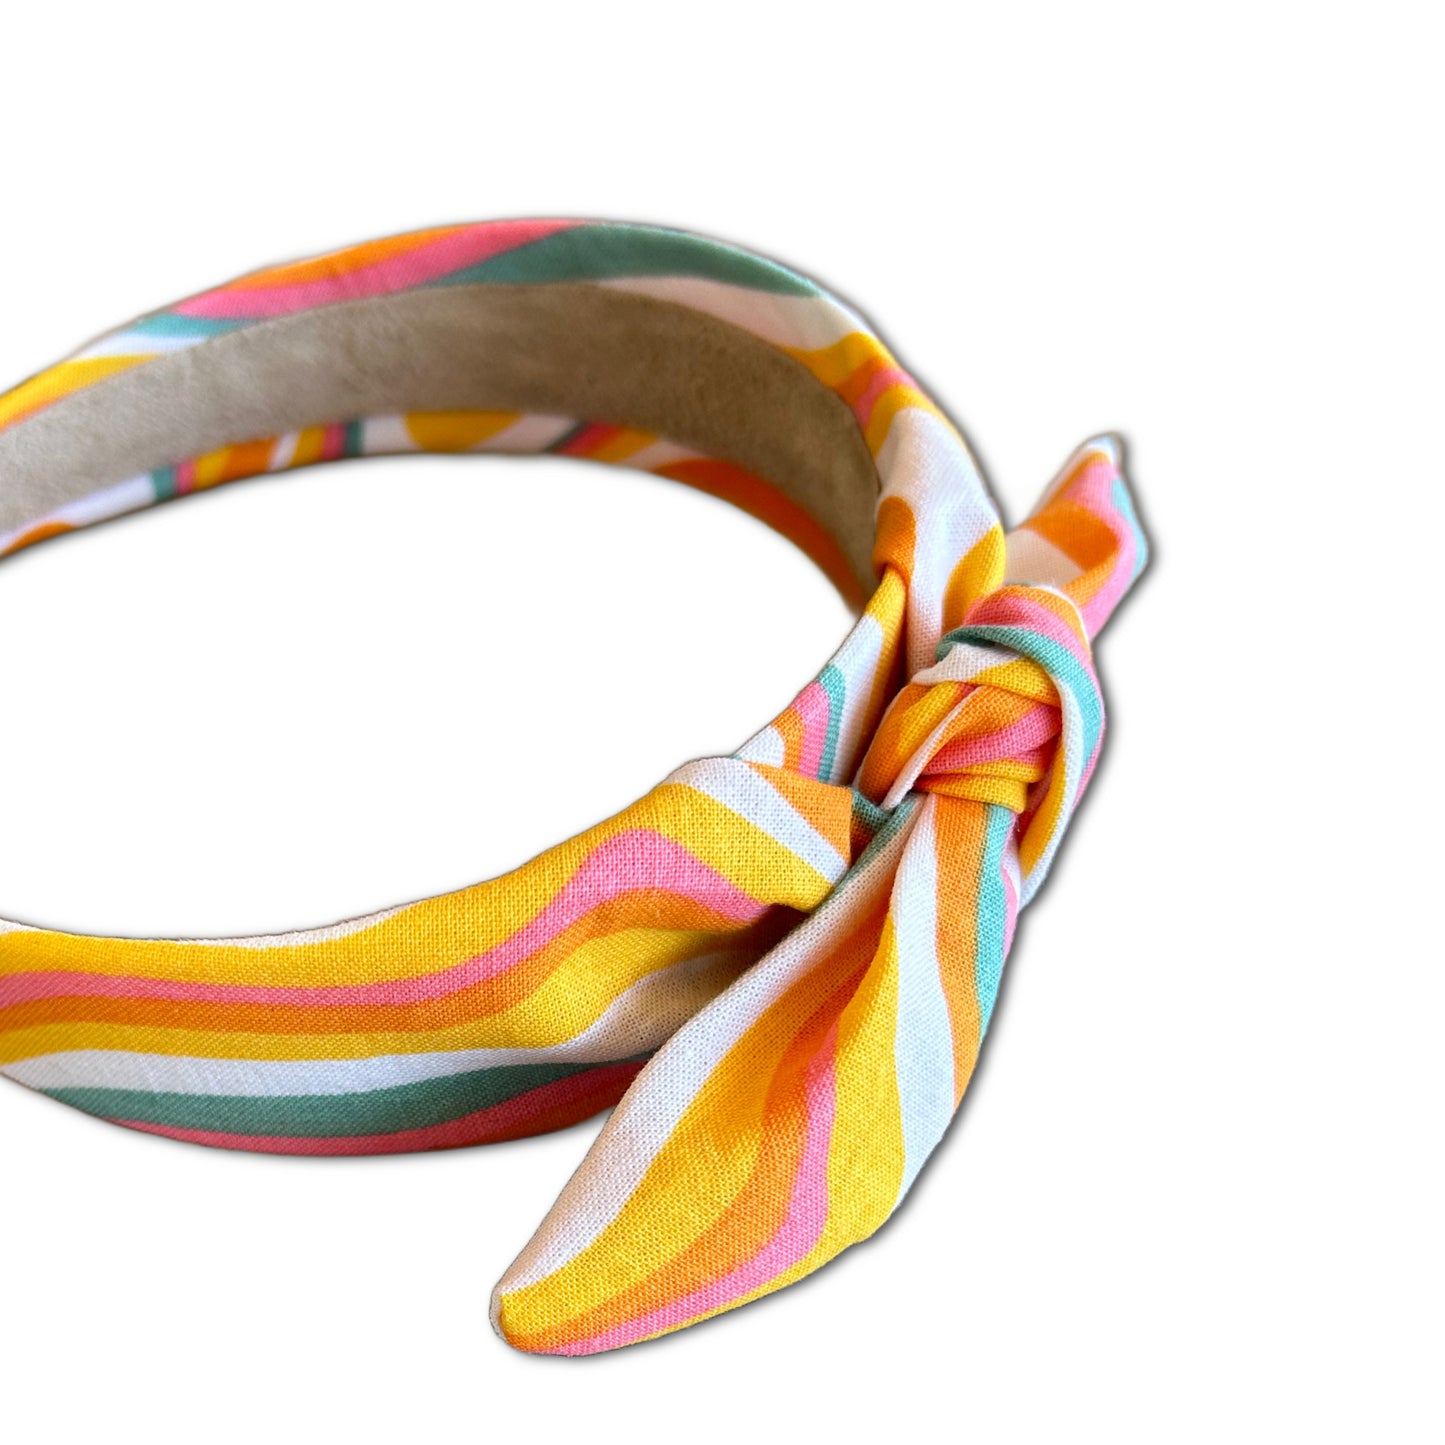 Summertime Swirl Knot Tie Headband